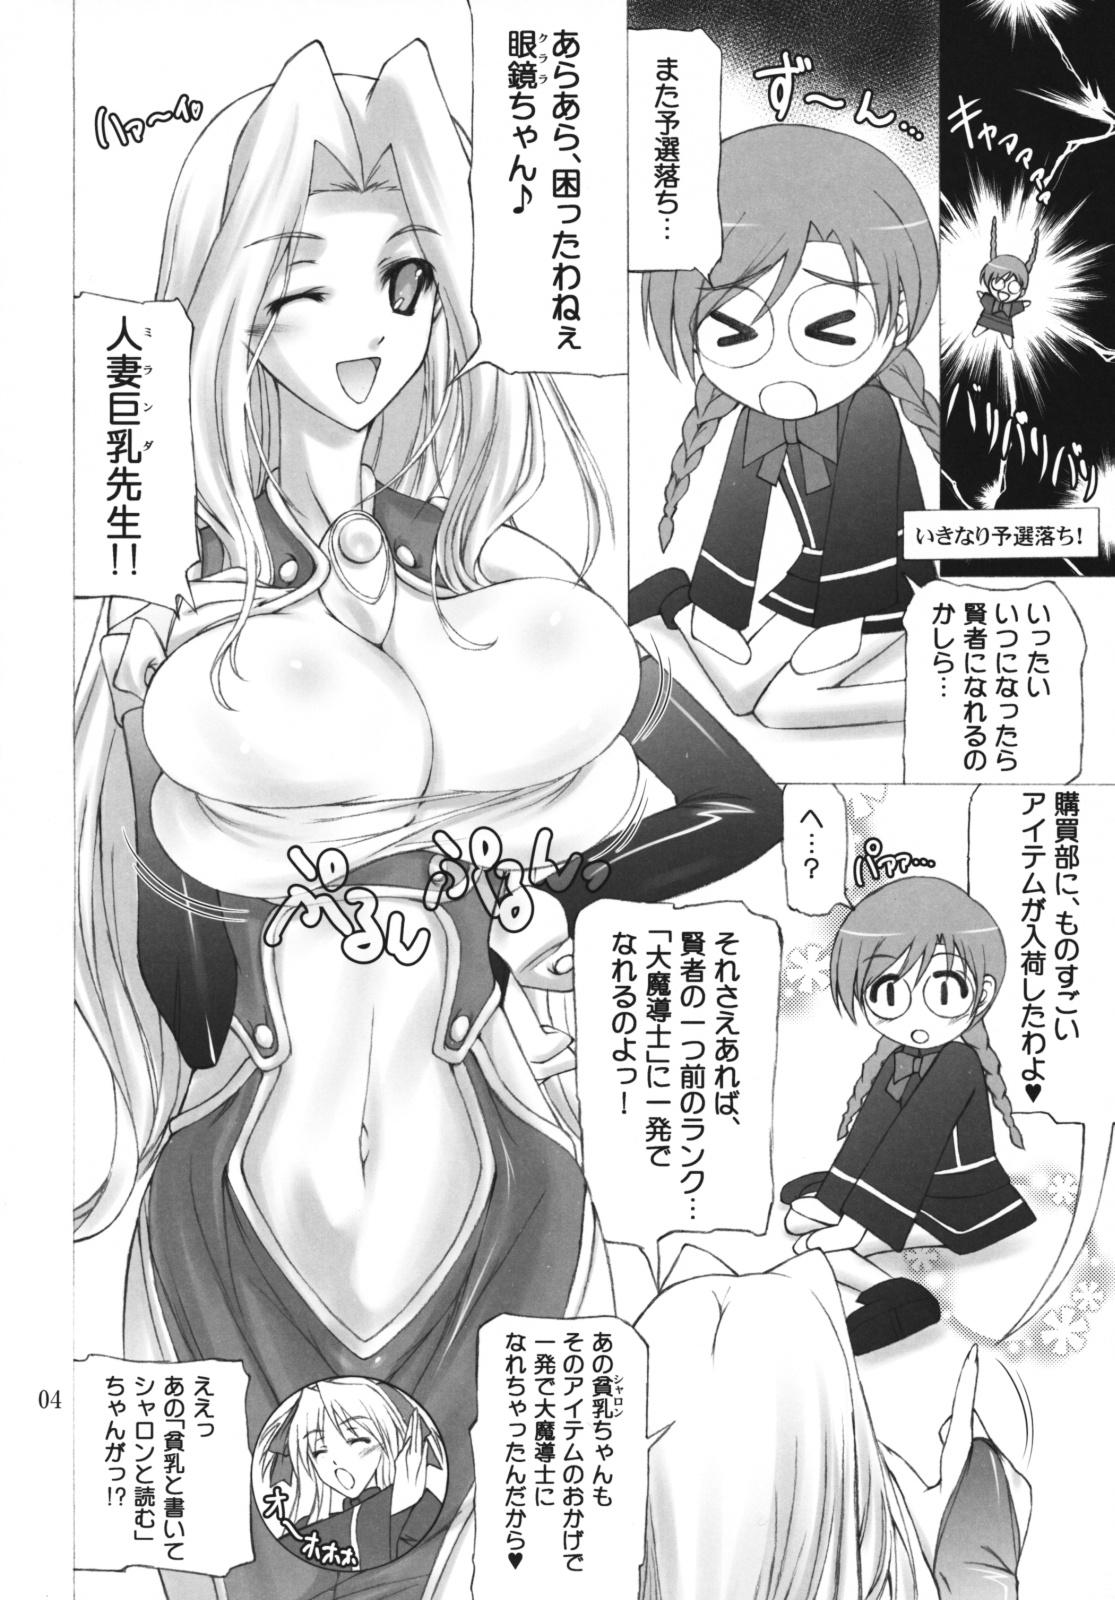 Flaca Quiz Chikara Udon Hajimemashita! - Quiz magic academy Hetero - Page 3